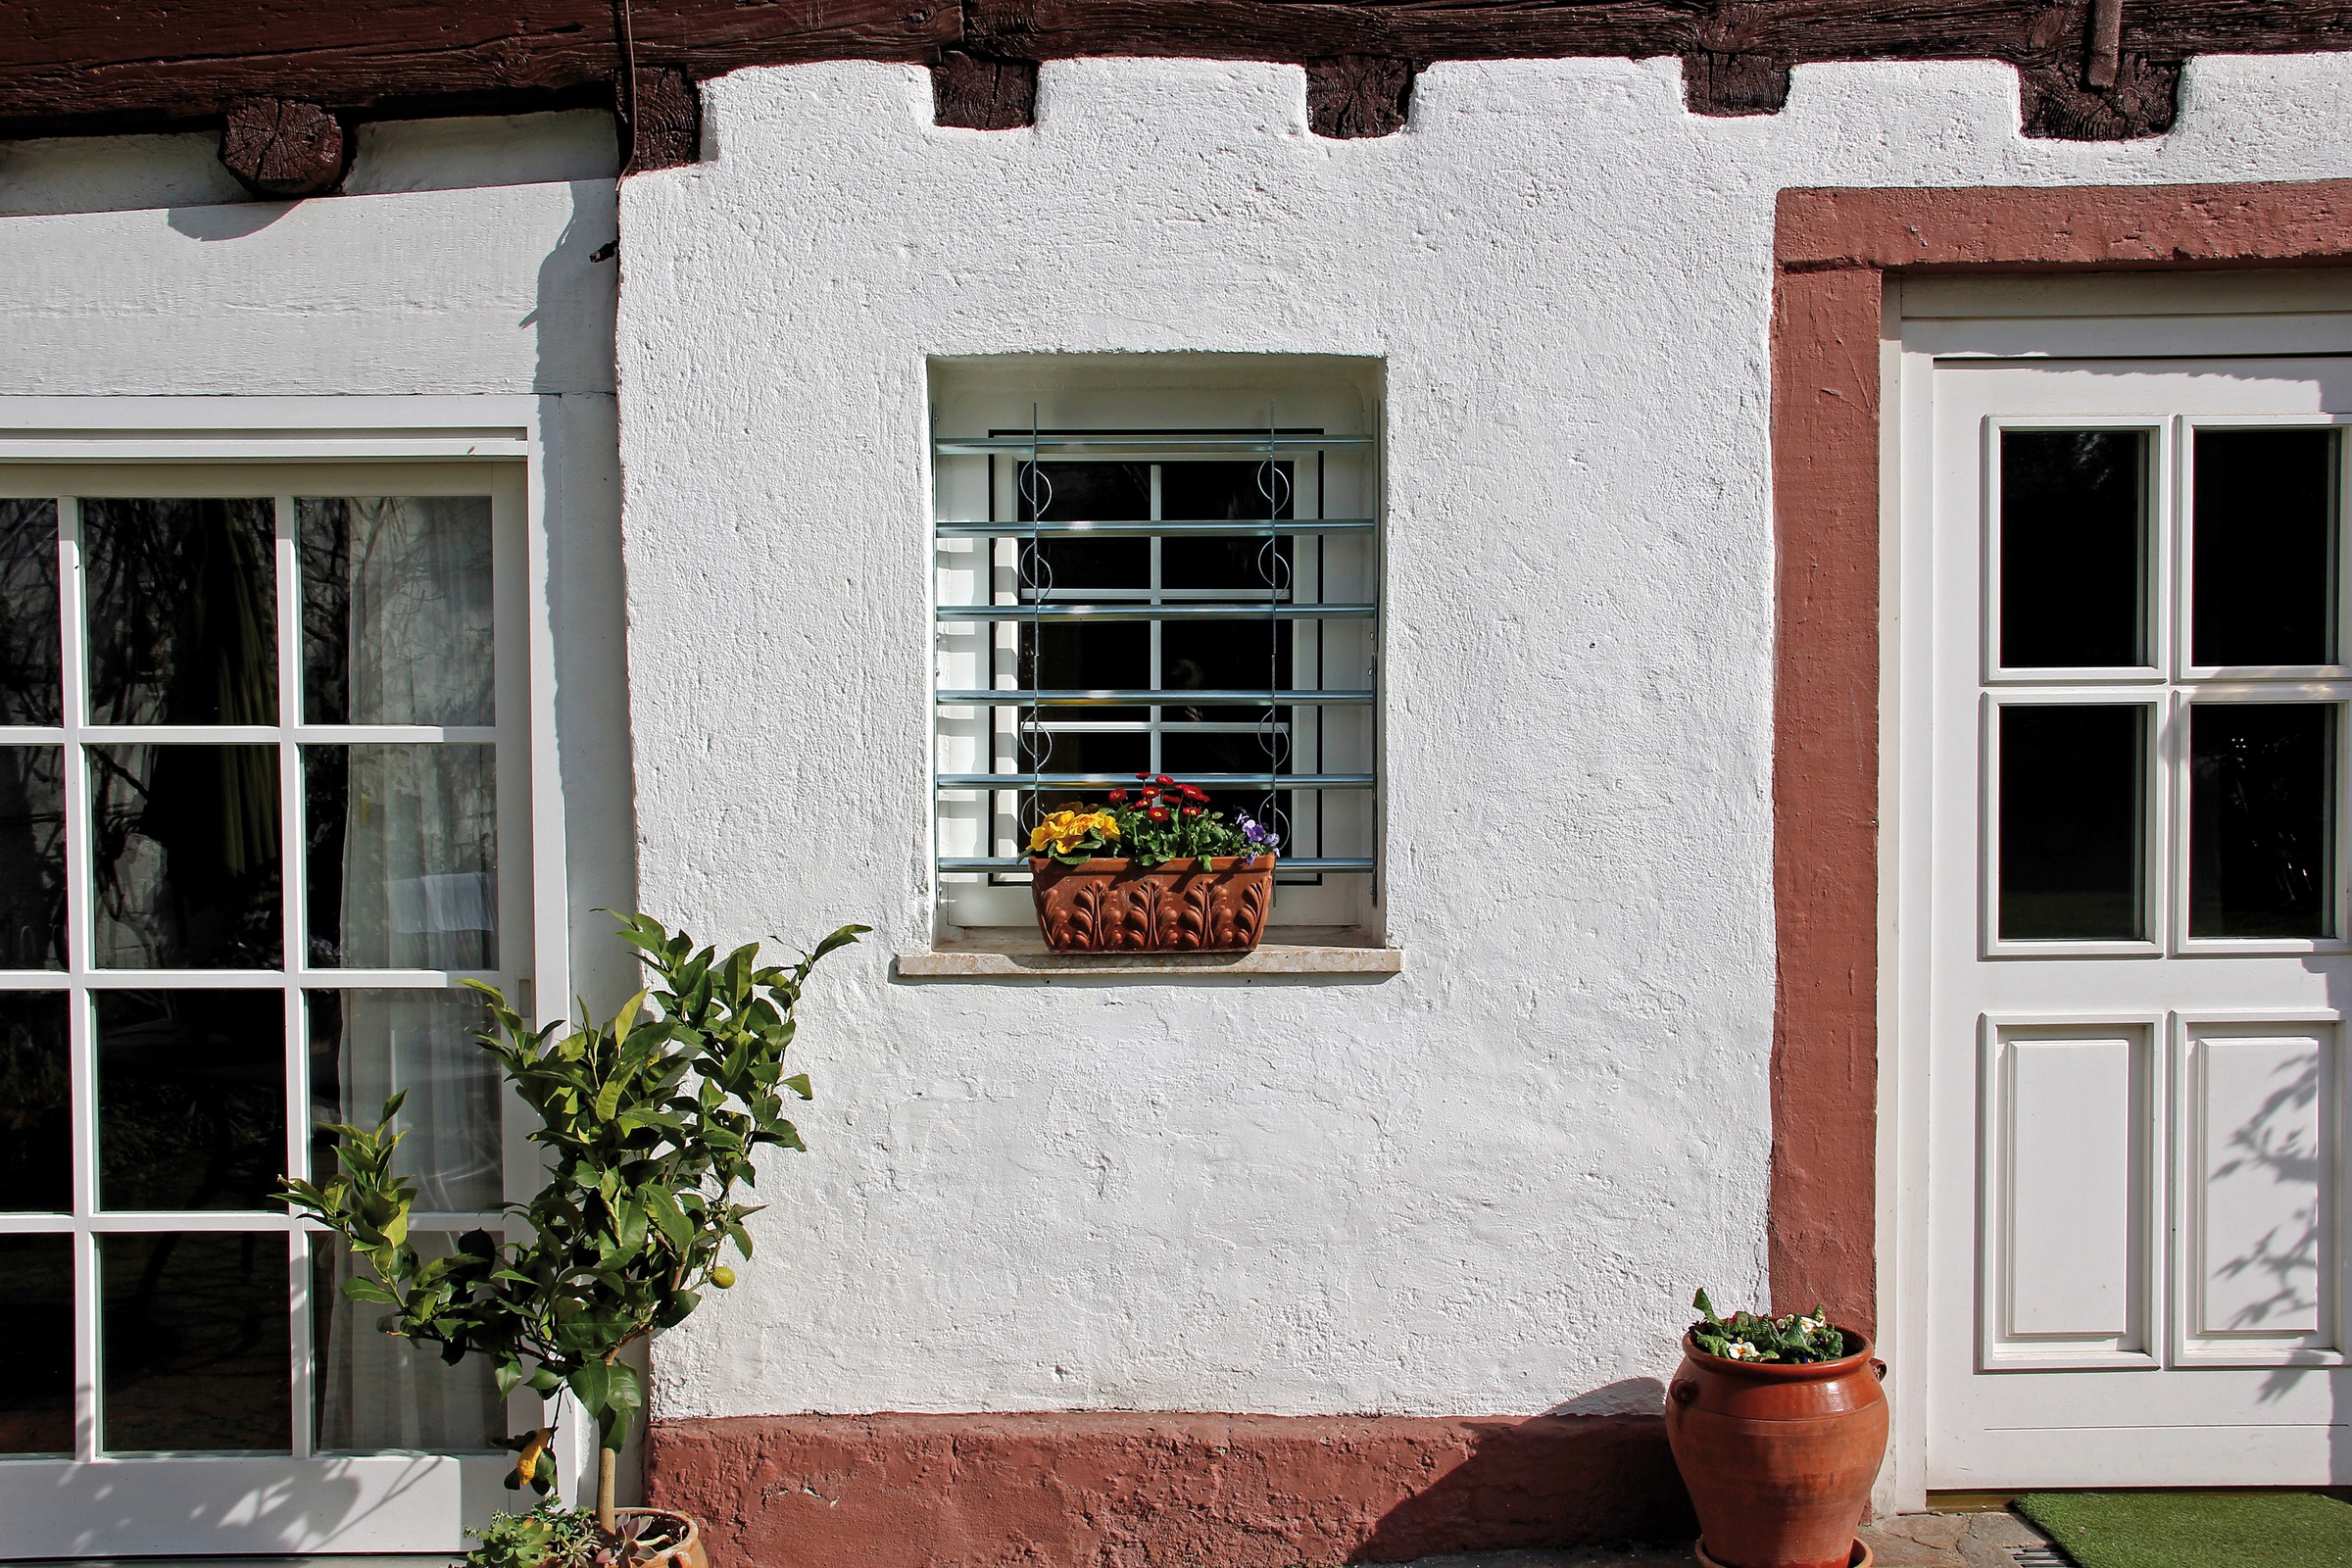 Alberts Fensterschutzgitter »Secorino Style«, Breite ausziehbar 50-65 cm, versch. Höhen